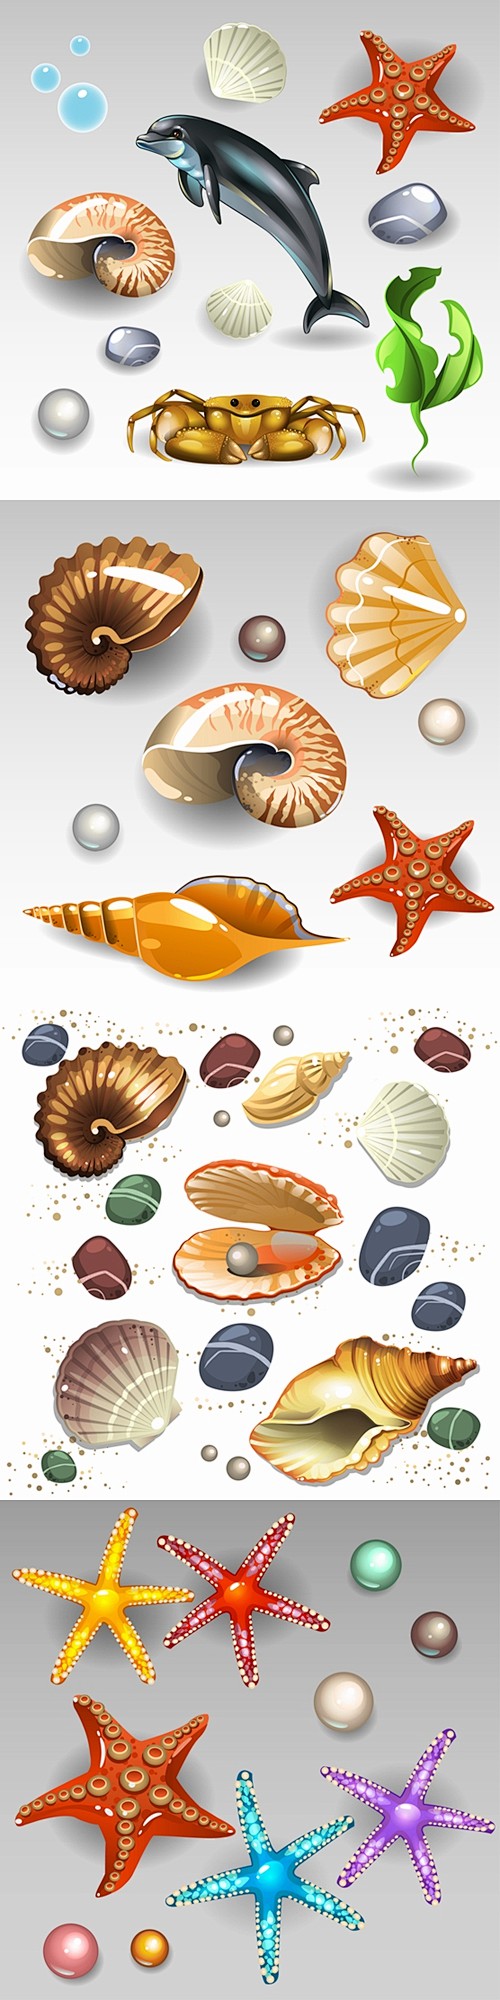 海洋生物矢量 5EPS 贝壳、海星、海螺...